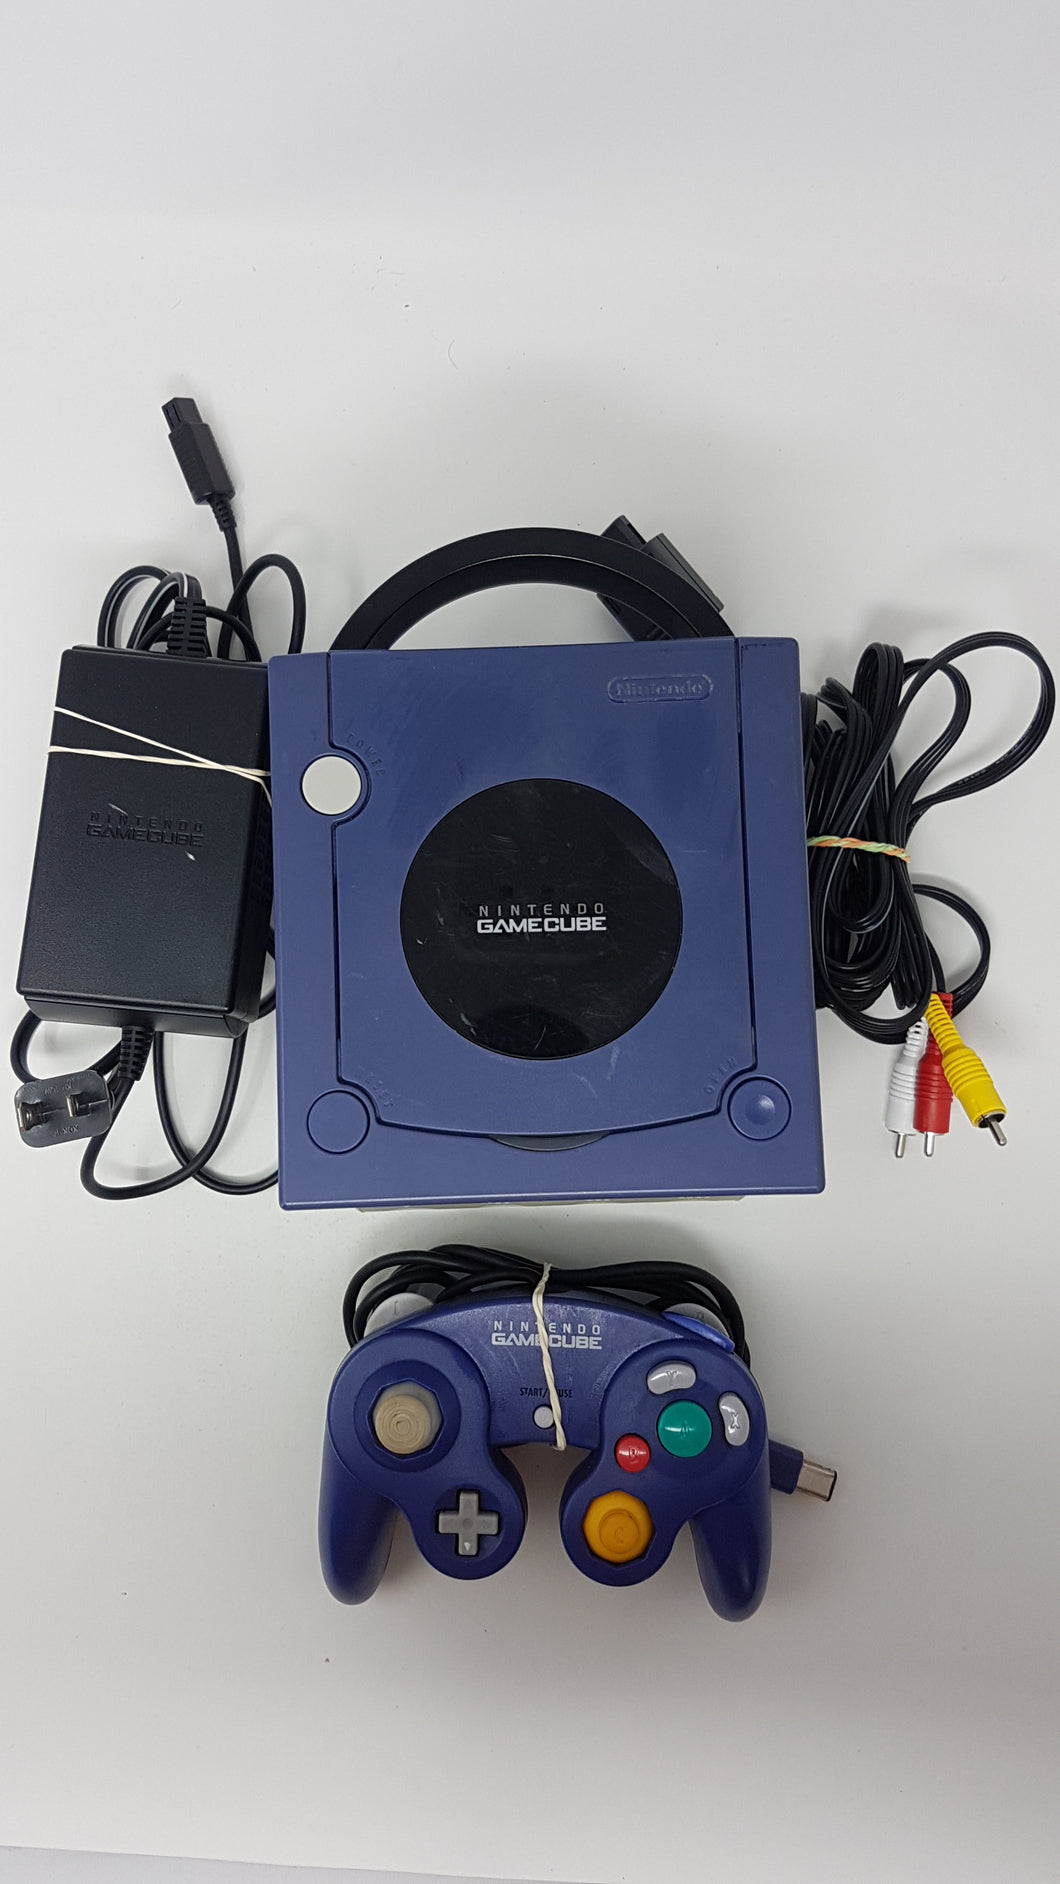 Indigo GameCube System [Console] - Nintendo Gamecube